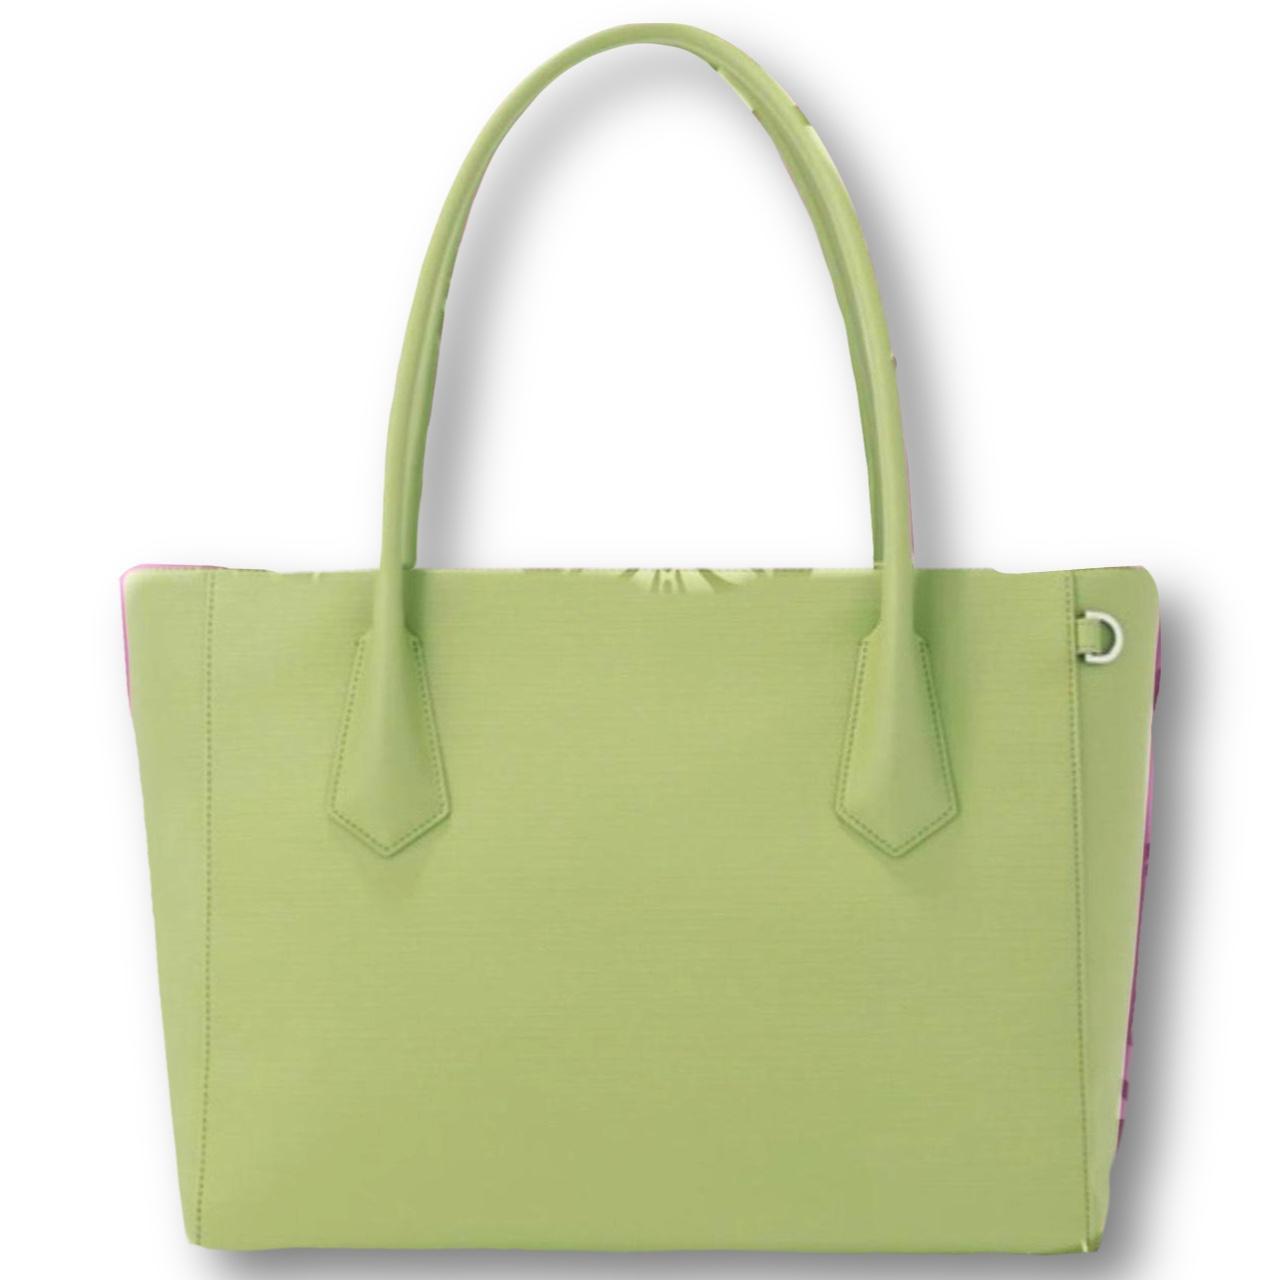 Dagne Dover Women's Green and White Bag | Depop